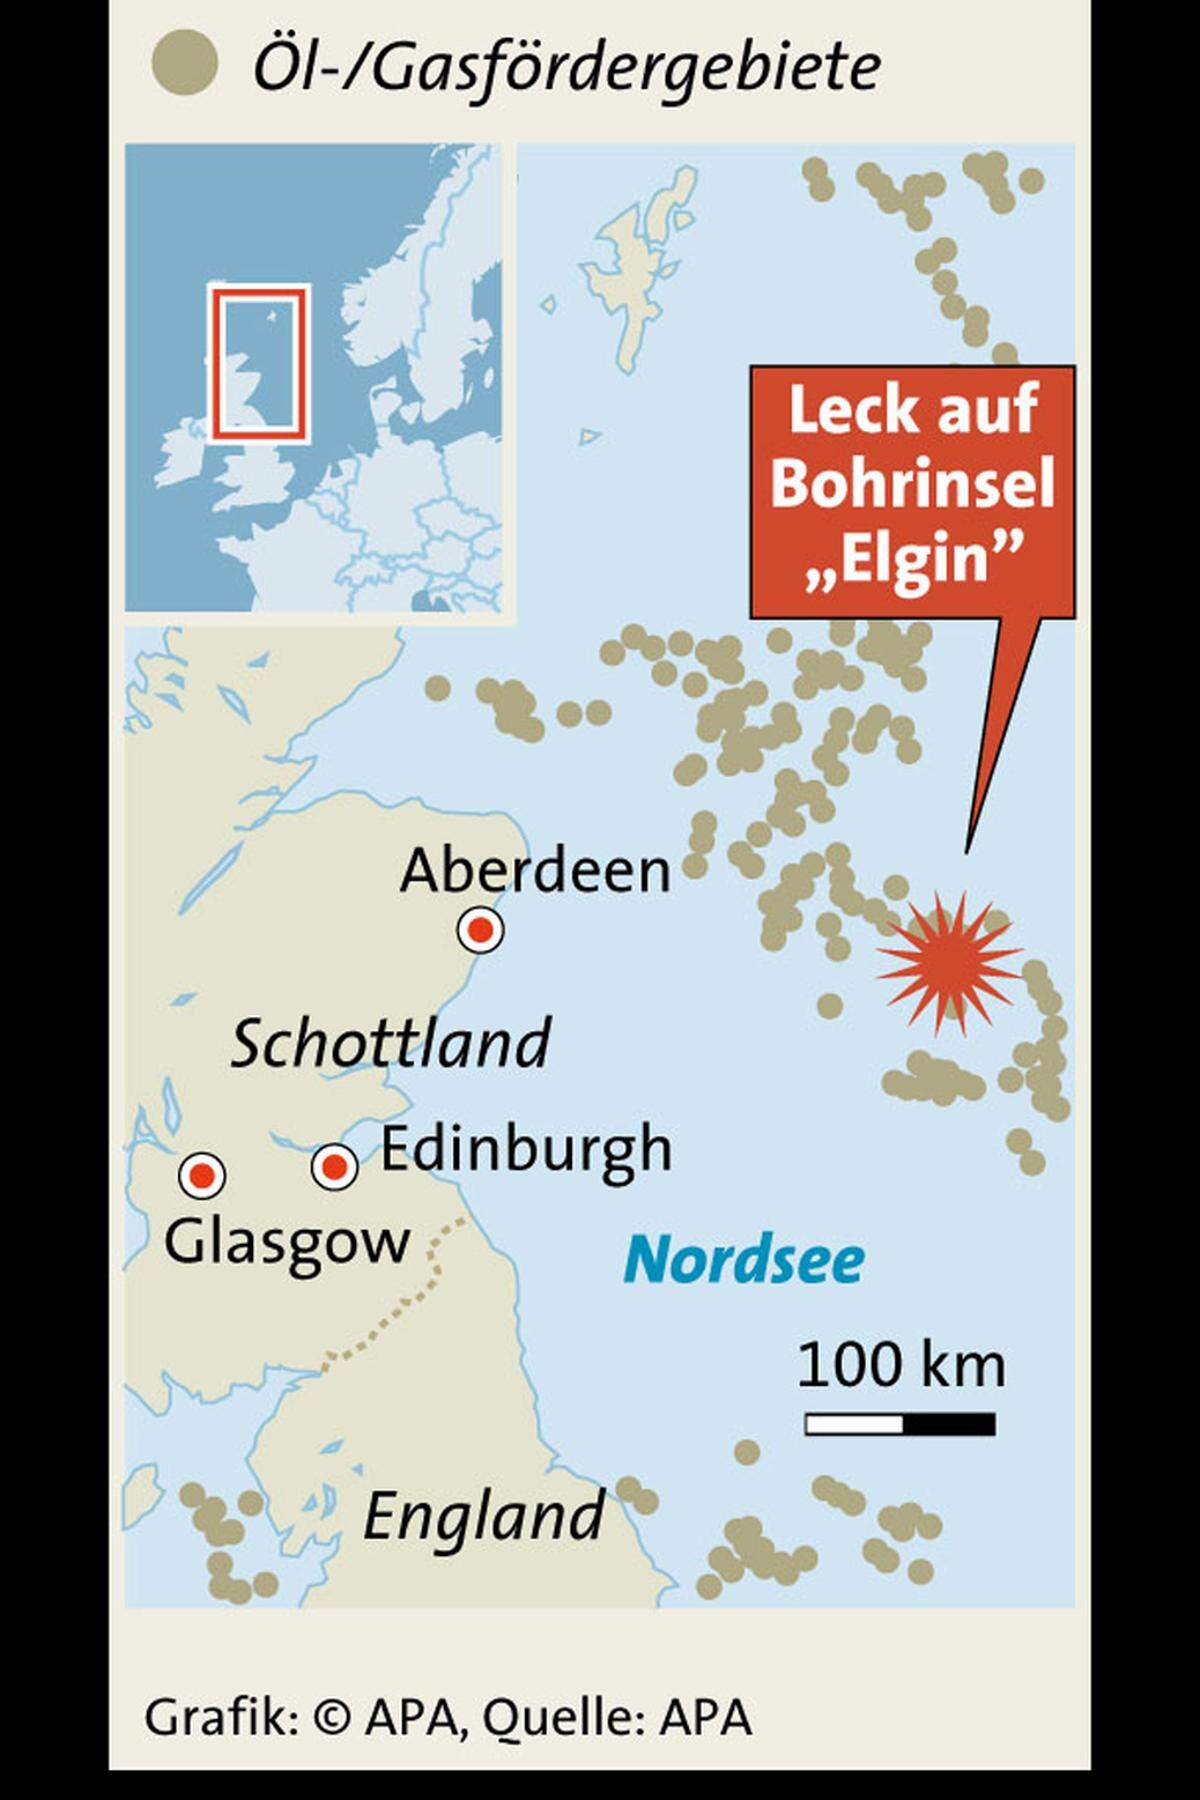 Die "Elgin"-Plattform ist eine Förderplattform, die rund 240 Kilometer östlich von Aberdeen in der Nordsee vor Schottland liegt. Das Meer ist dort nur knapp 100 Meter tief.